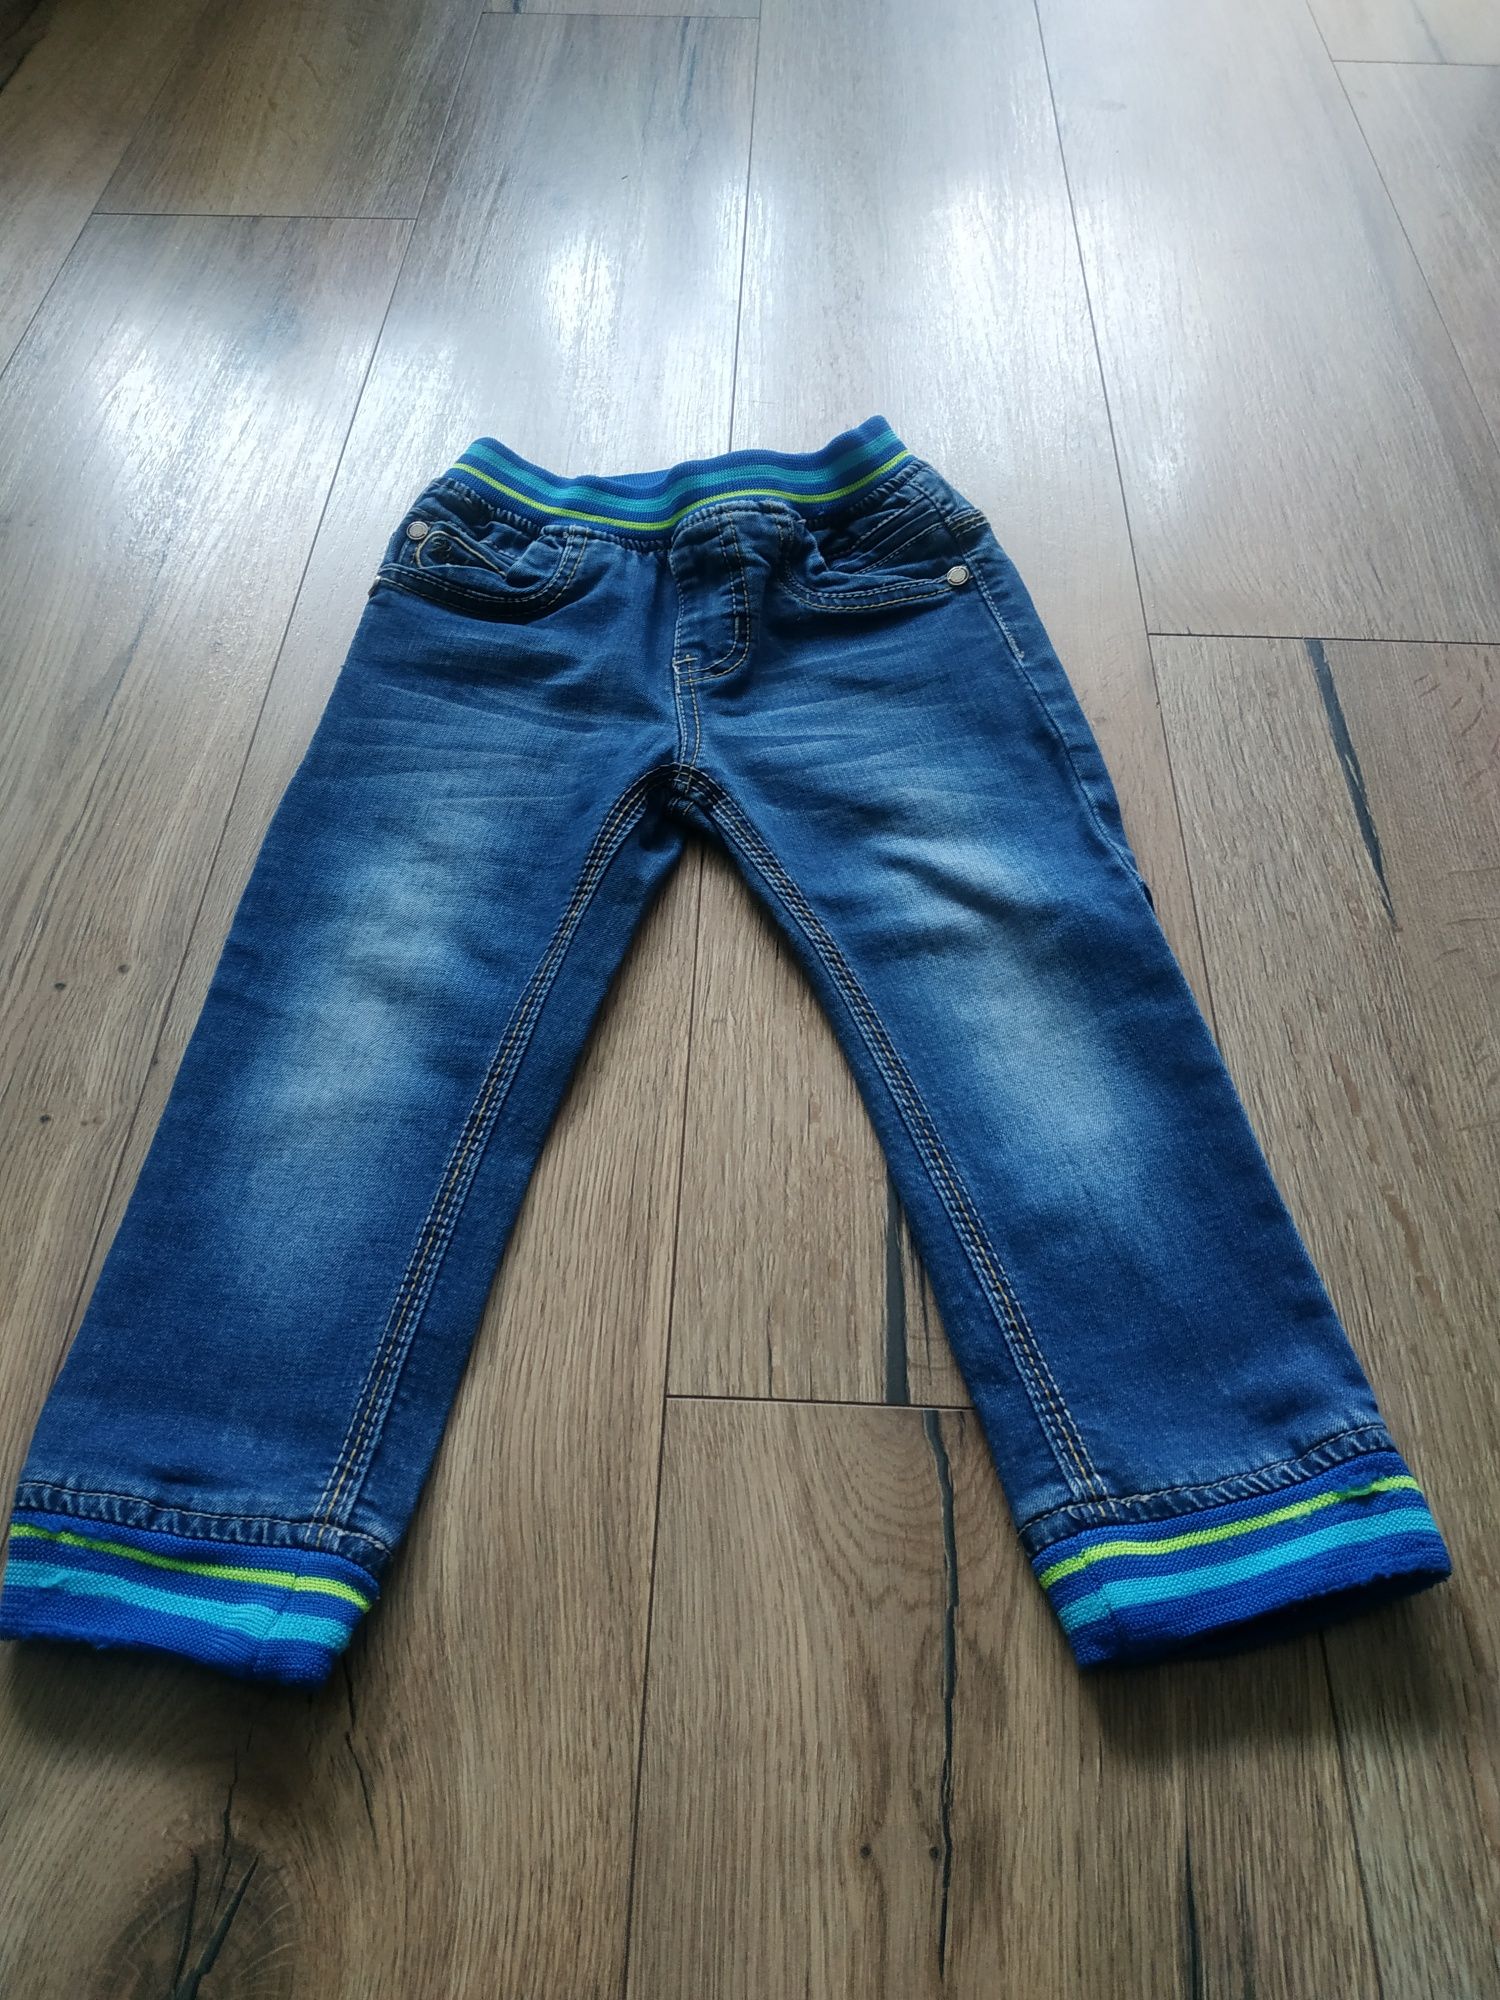 Spodnie chłopięce dżinsowe 86/92cm